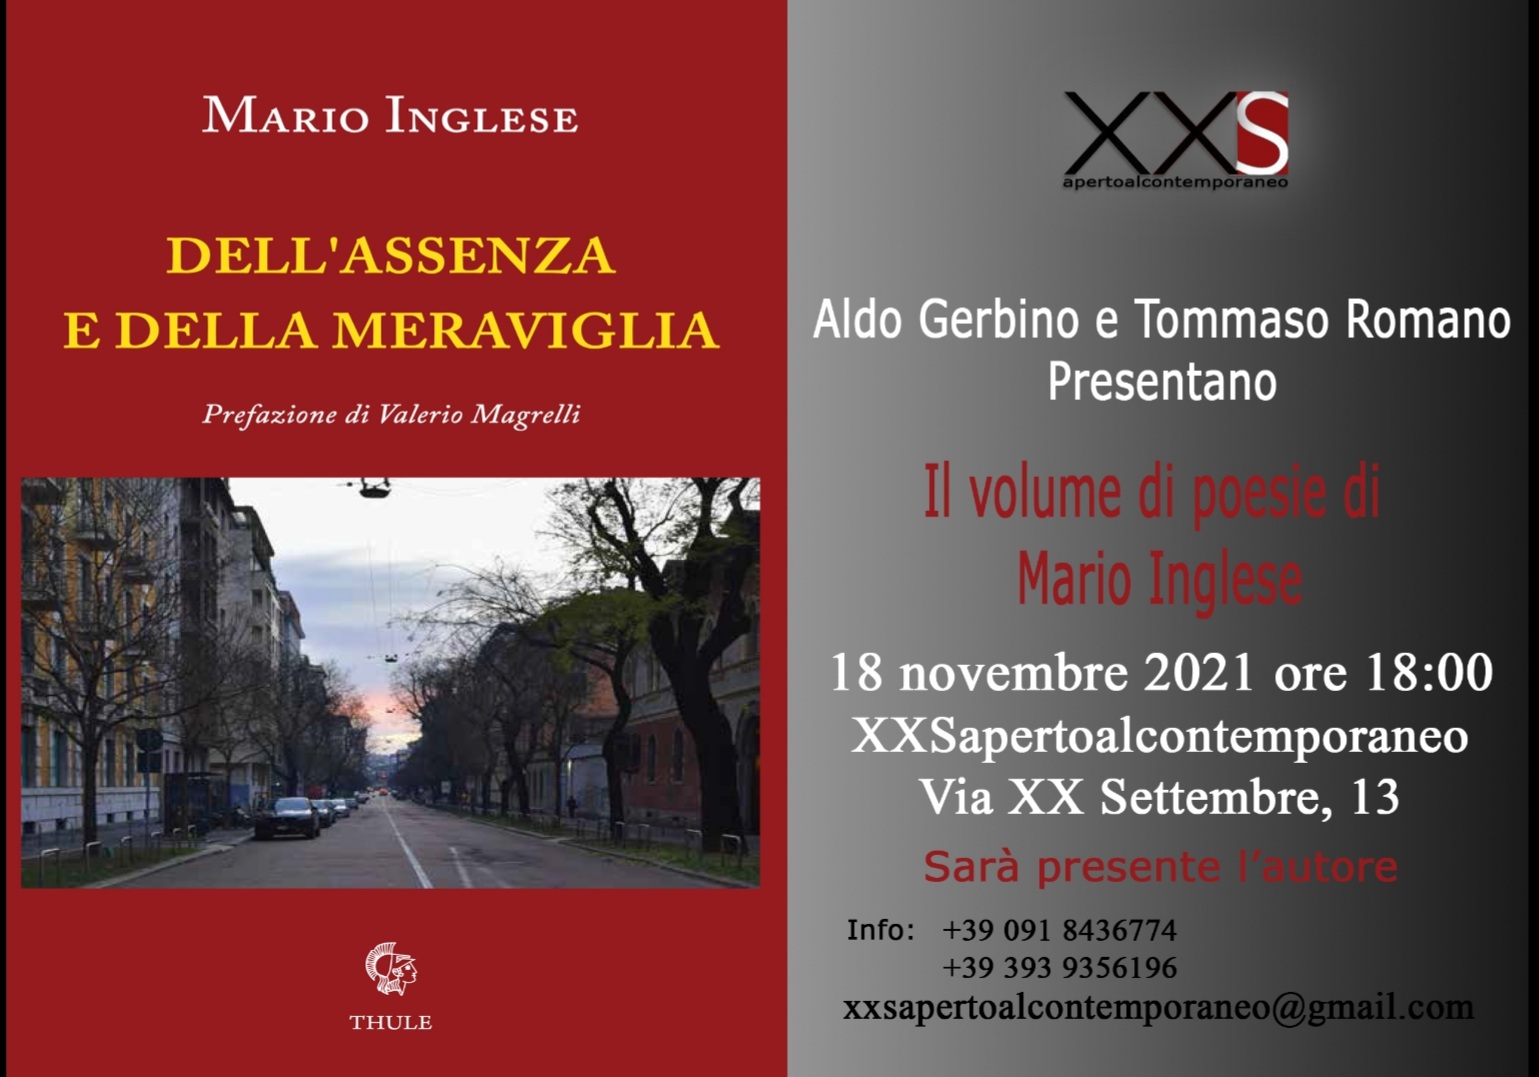 Presentazione della silloge "Dell'assenza e della meraviglia" di Mario Inglese (Ed. Thule). Il 18 novembre 2021 a XXS aperto al contemporaneo di Palermo